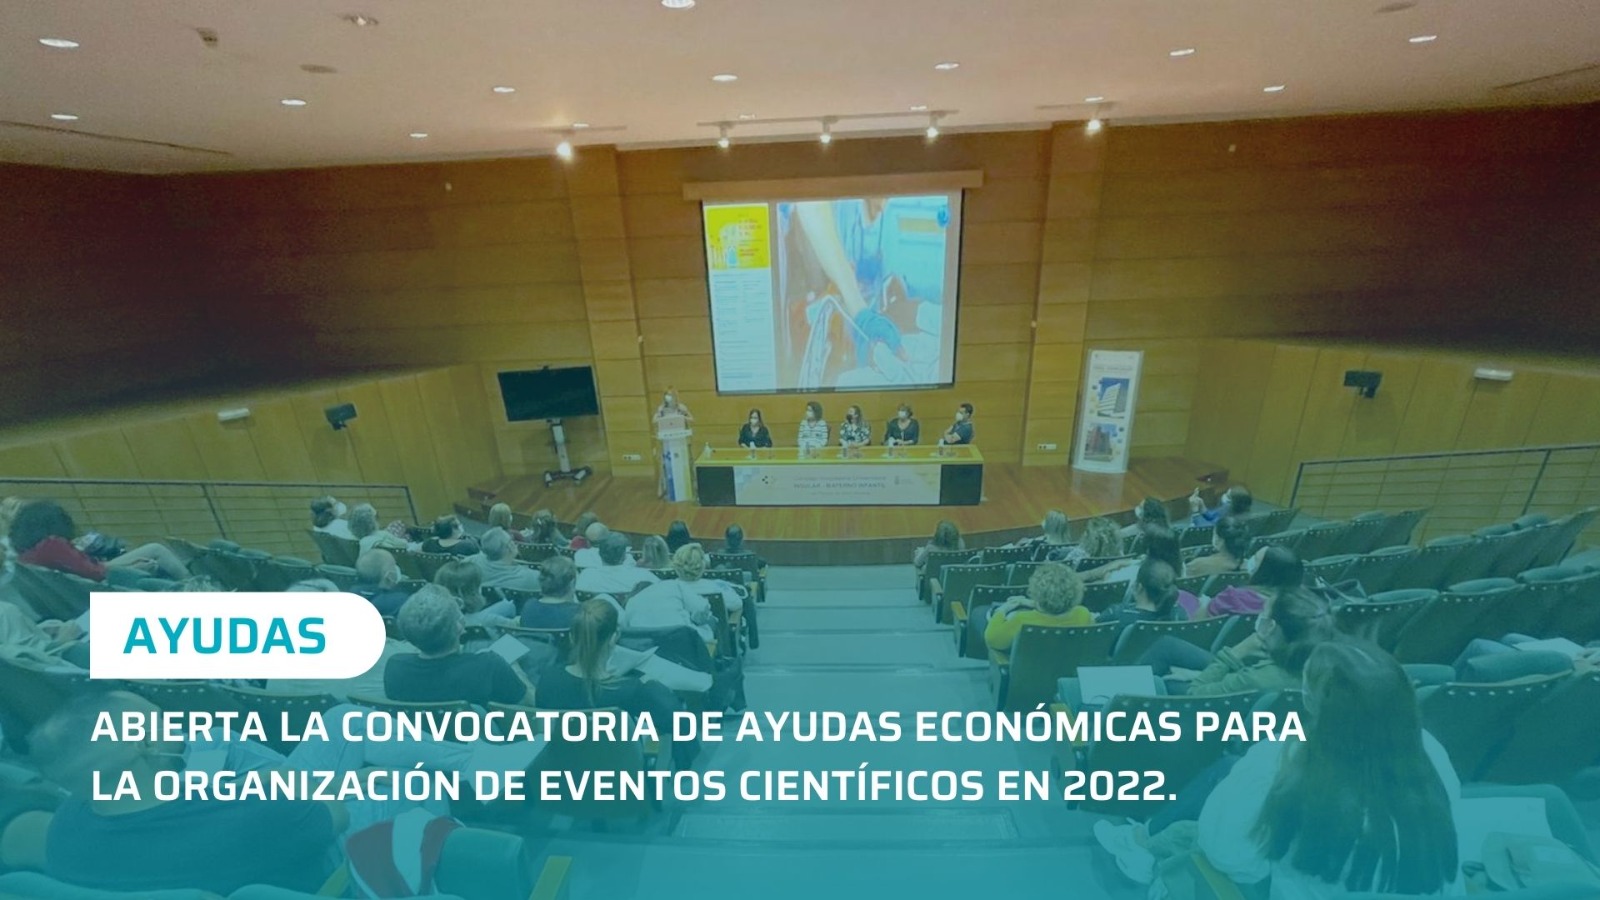 Convocatoria abierta para ayudas económicas a la organización de eventos científicos en 2022